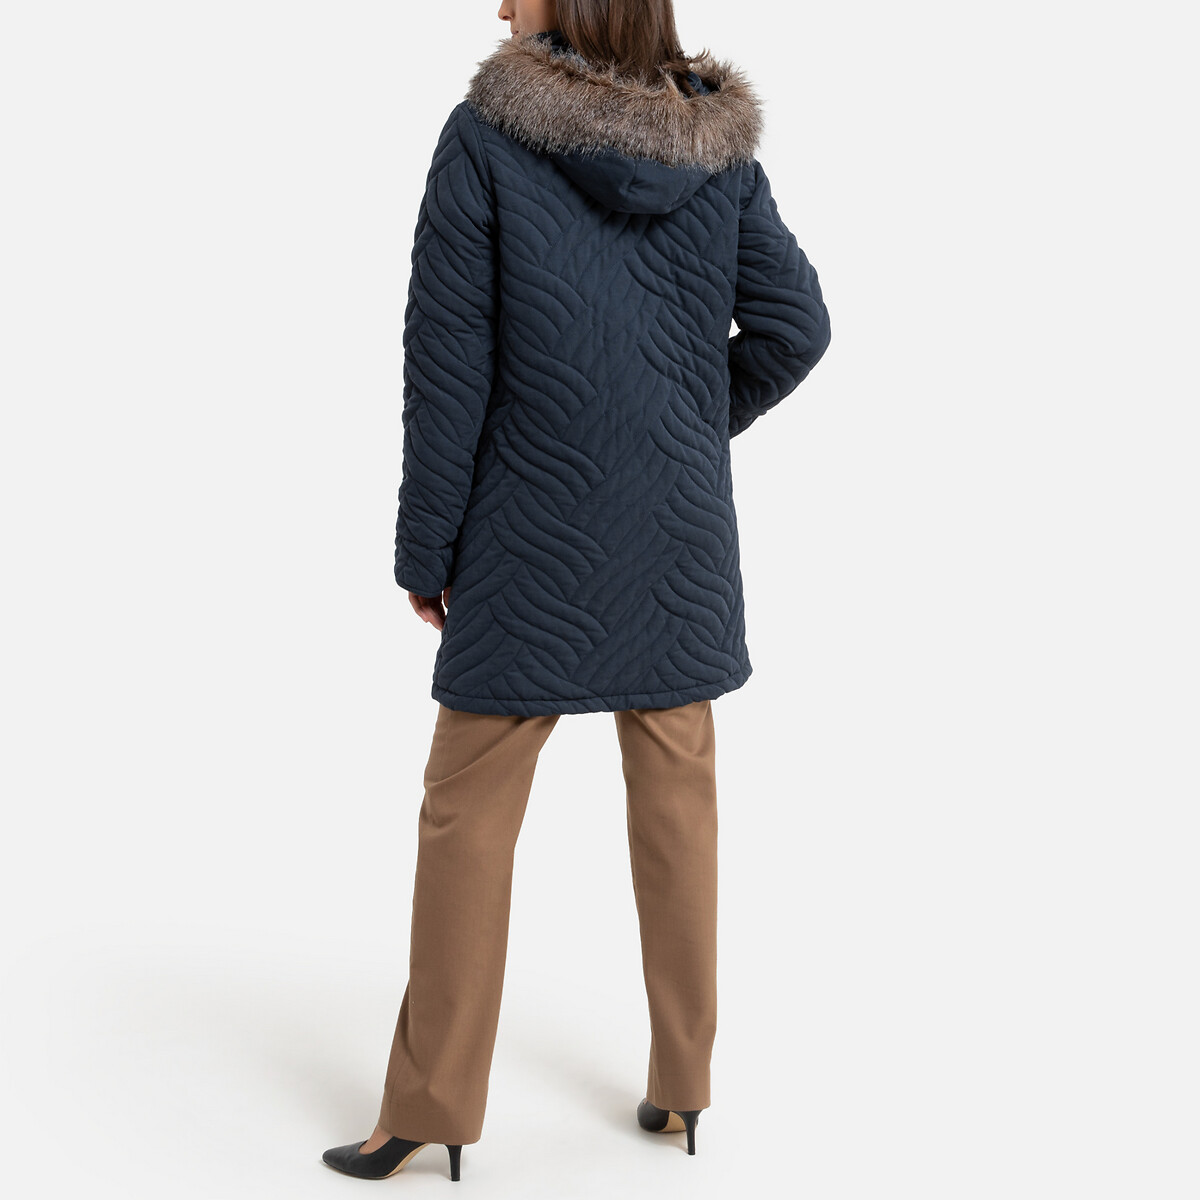 Куртка La Redoute Стеганая средней длины с капюшоном зимняя модель 48 (FR) - 54 (RUS) синий, размер 48 (FR) - 54 (RUS) Стеганая средней длины с капюшоном зимняя модель 48 (FR) - 54 (RUS) синий - фото 4